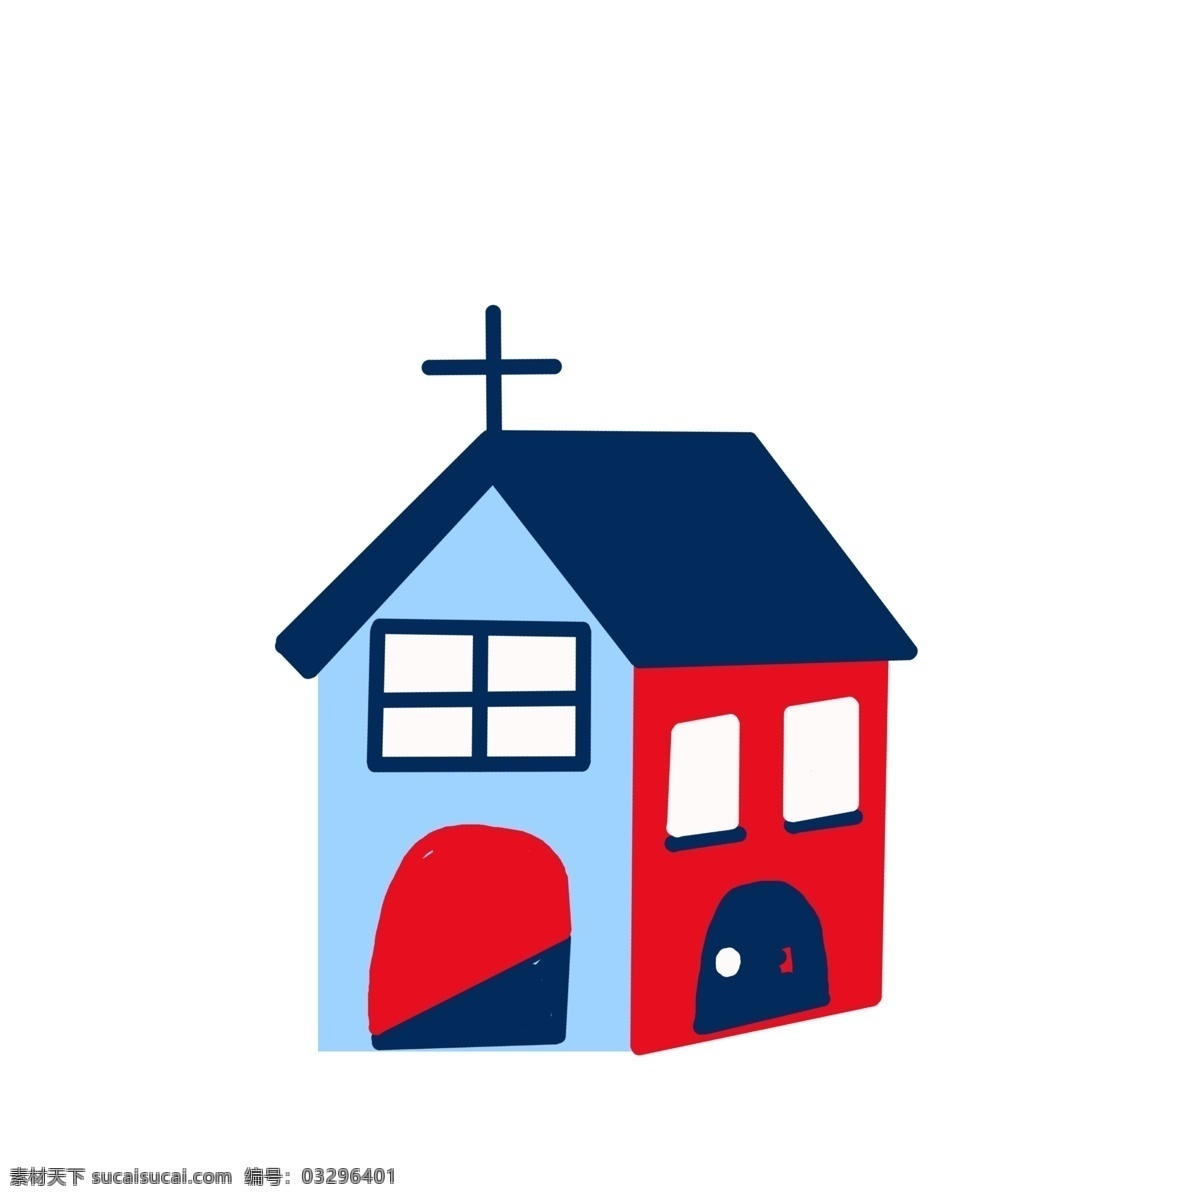 卡通 教堂 建筑 插画 彩色教堂建筑 卡通建筑插画 蓝色房顶 彩色房屋建筑 十字架 彩色建筑